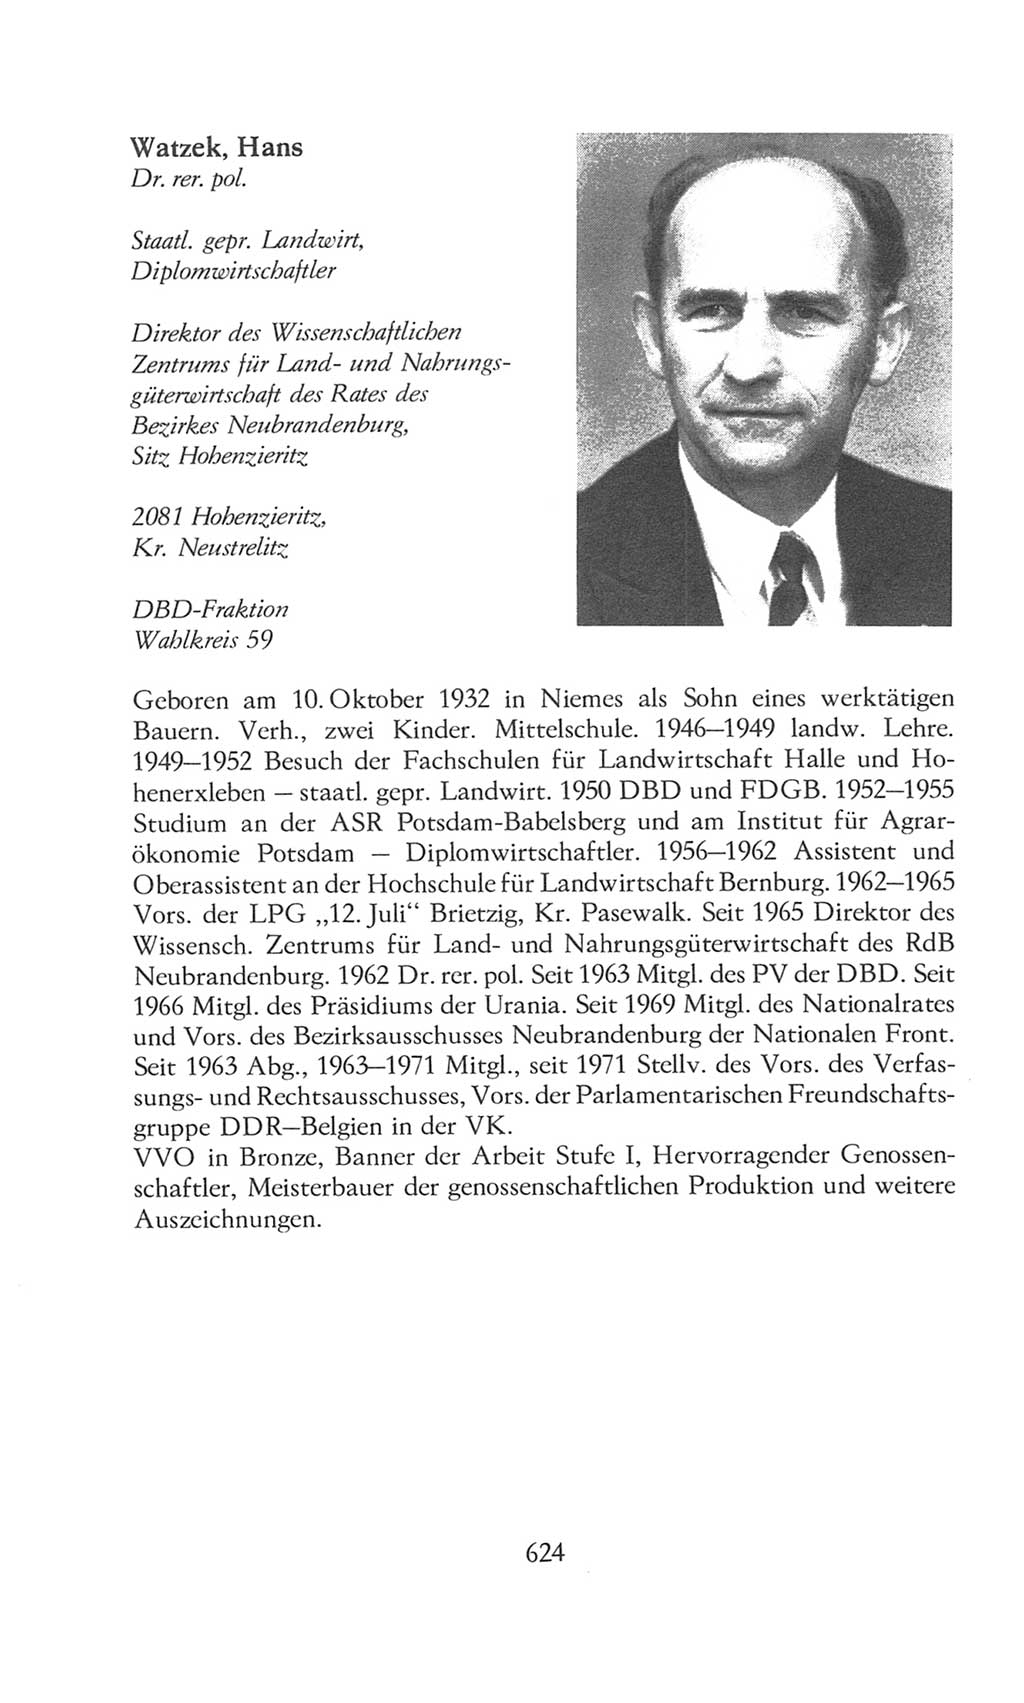 Volkskammer (VK) der Deutschen Demokratischen Republik (DDR), 8. Wahlperiode 1981-1986, Seite 624 (VK. DDR 8. WP. 1981-1986, S. 624)